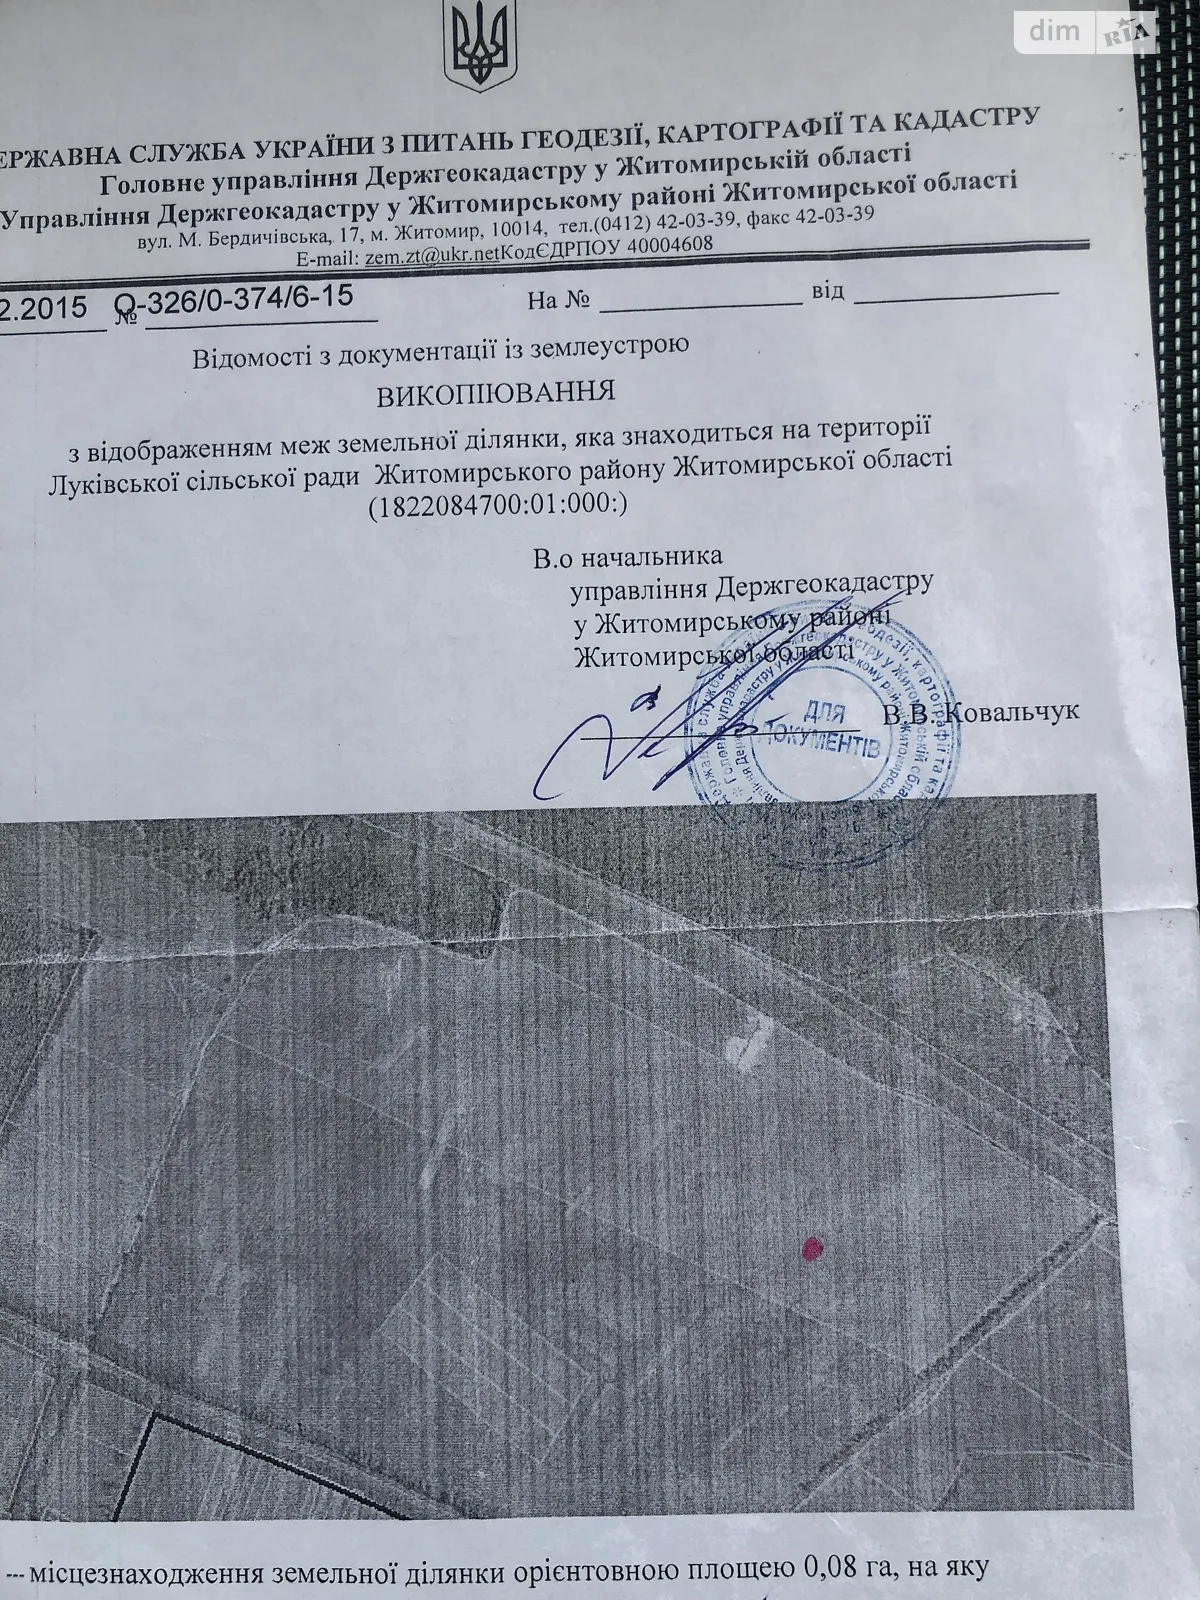 Продается земельный участок 0.8 соток в Житомирской области, цена: 220000 грн - фото 1